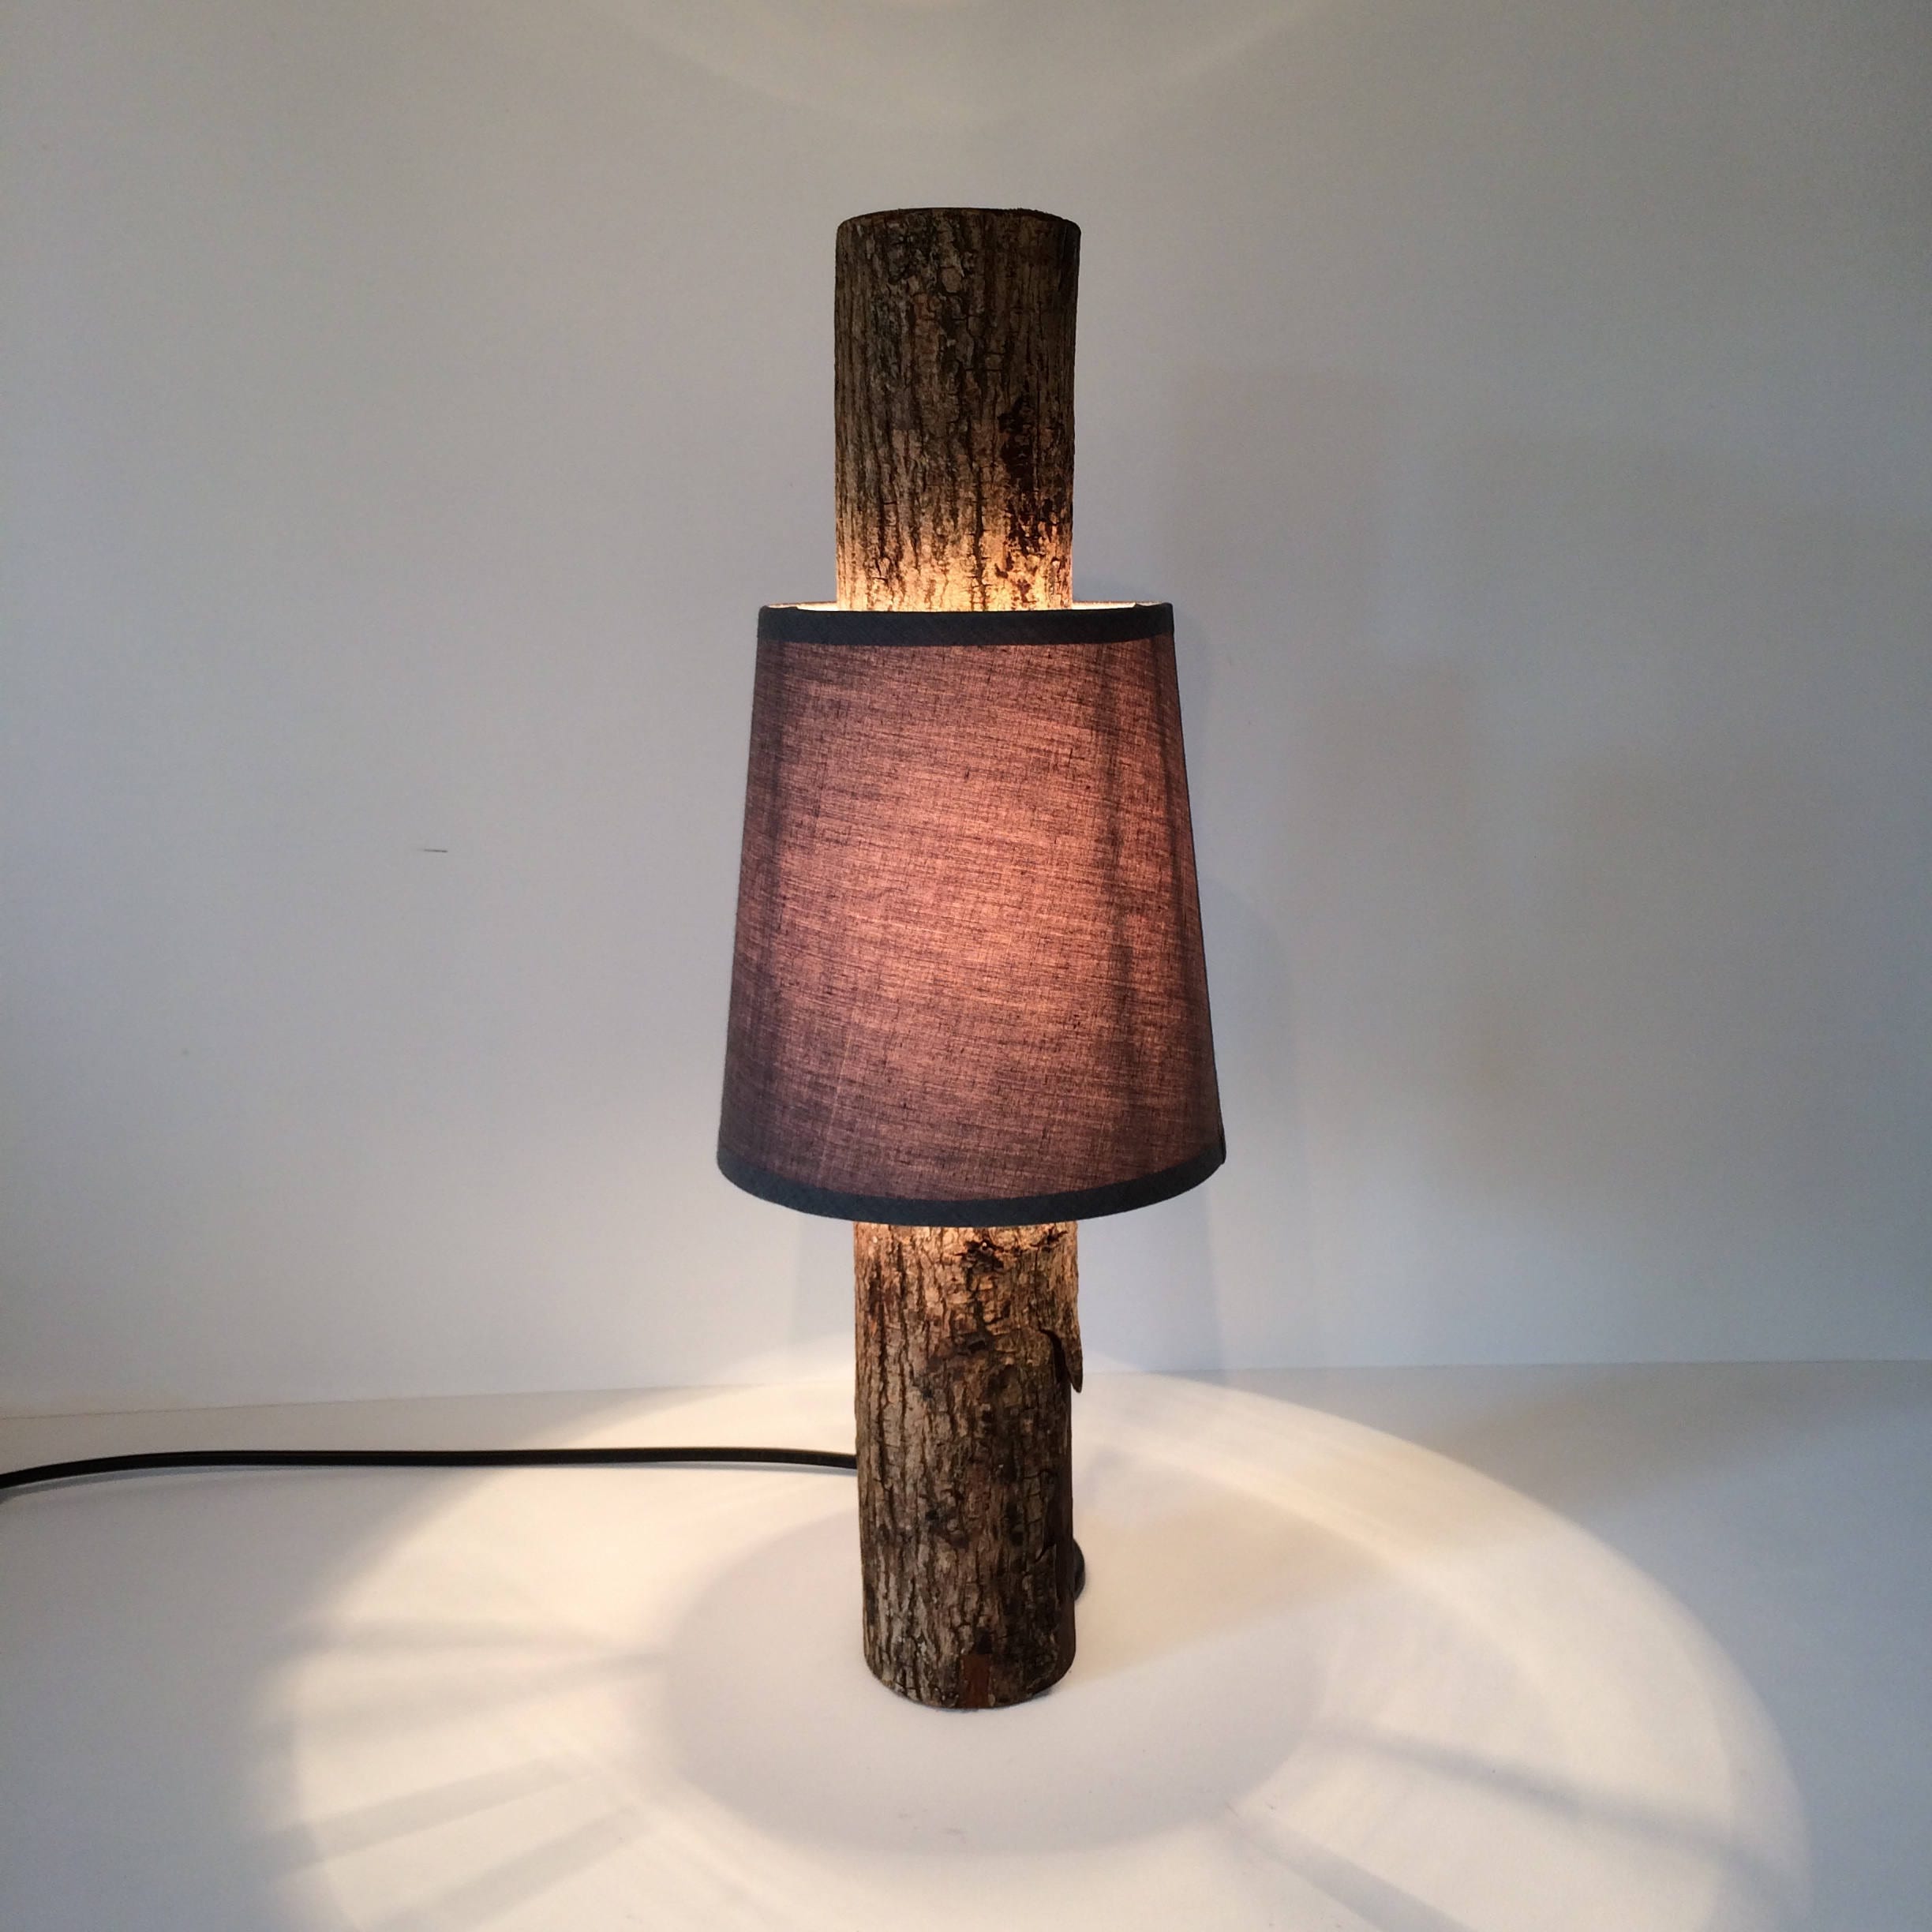 log lamp, log light, rustic table lamp, wooden lamp, bedroom lamp